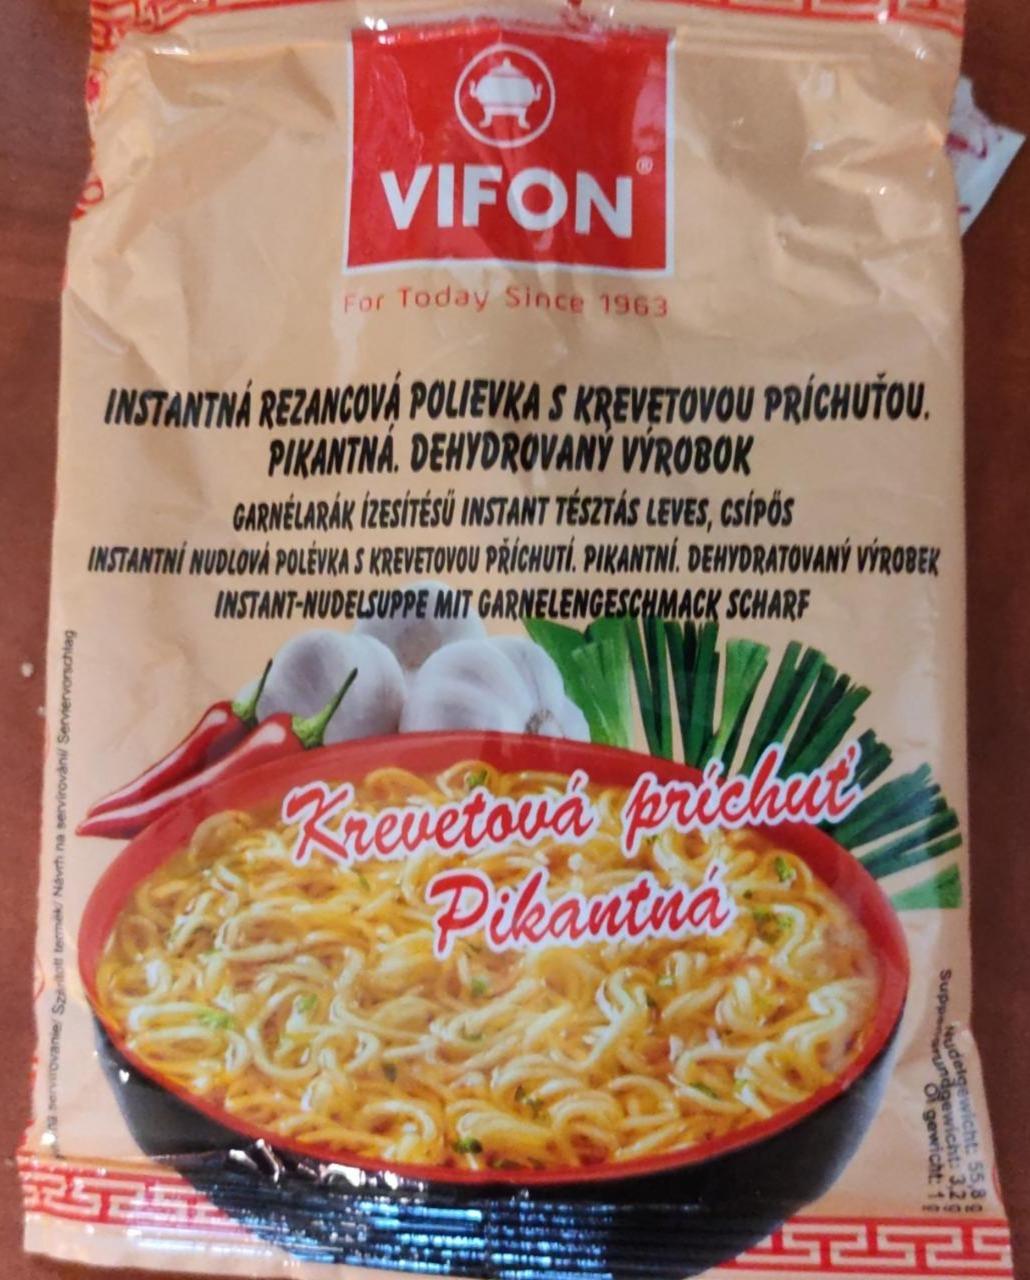 Képek - Csípős, garnélarák ízesítésű instant tésztás leves Vifon